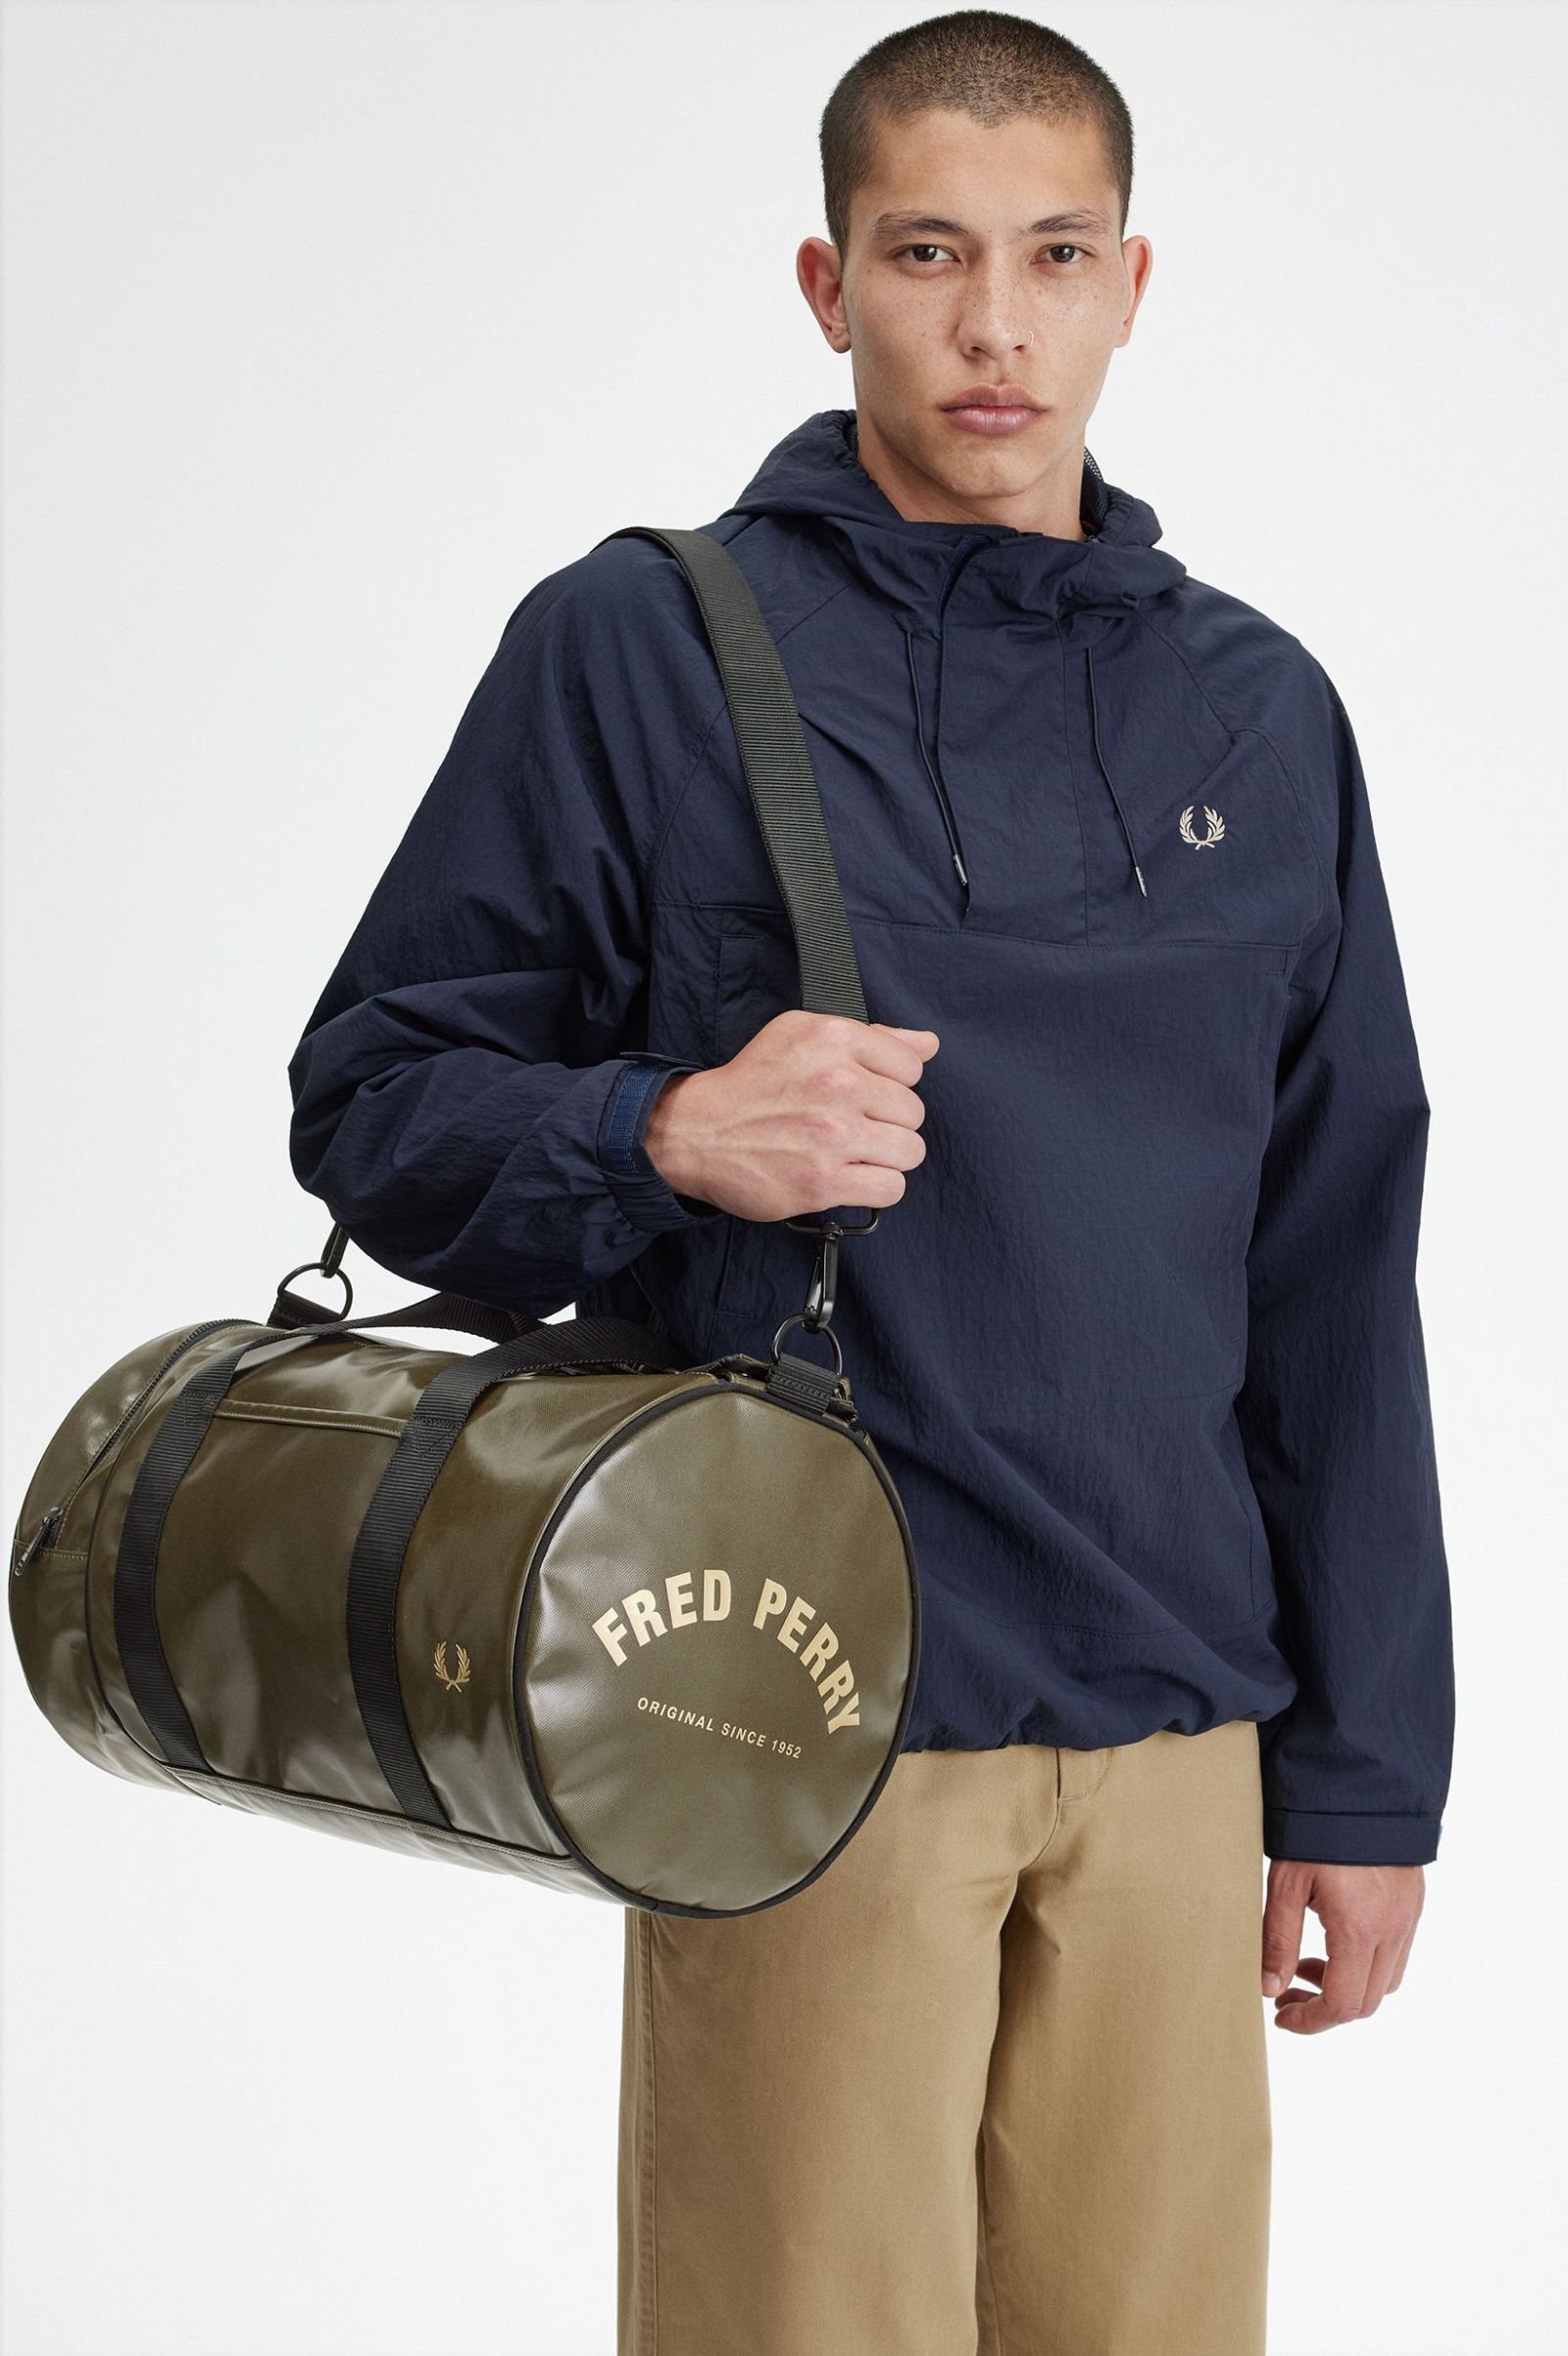 Fred Perry Tonal Barrel Bag in Uniform Green 